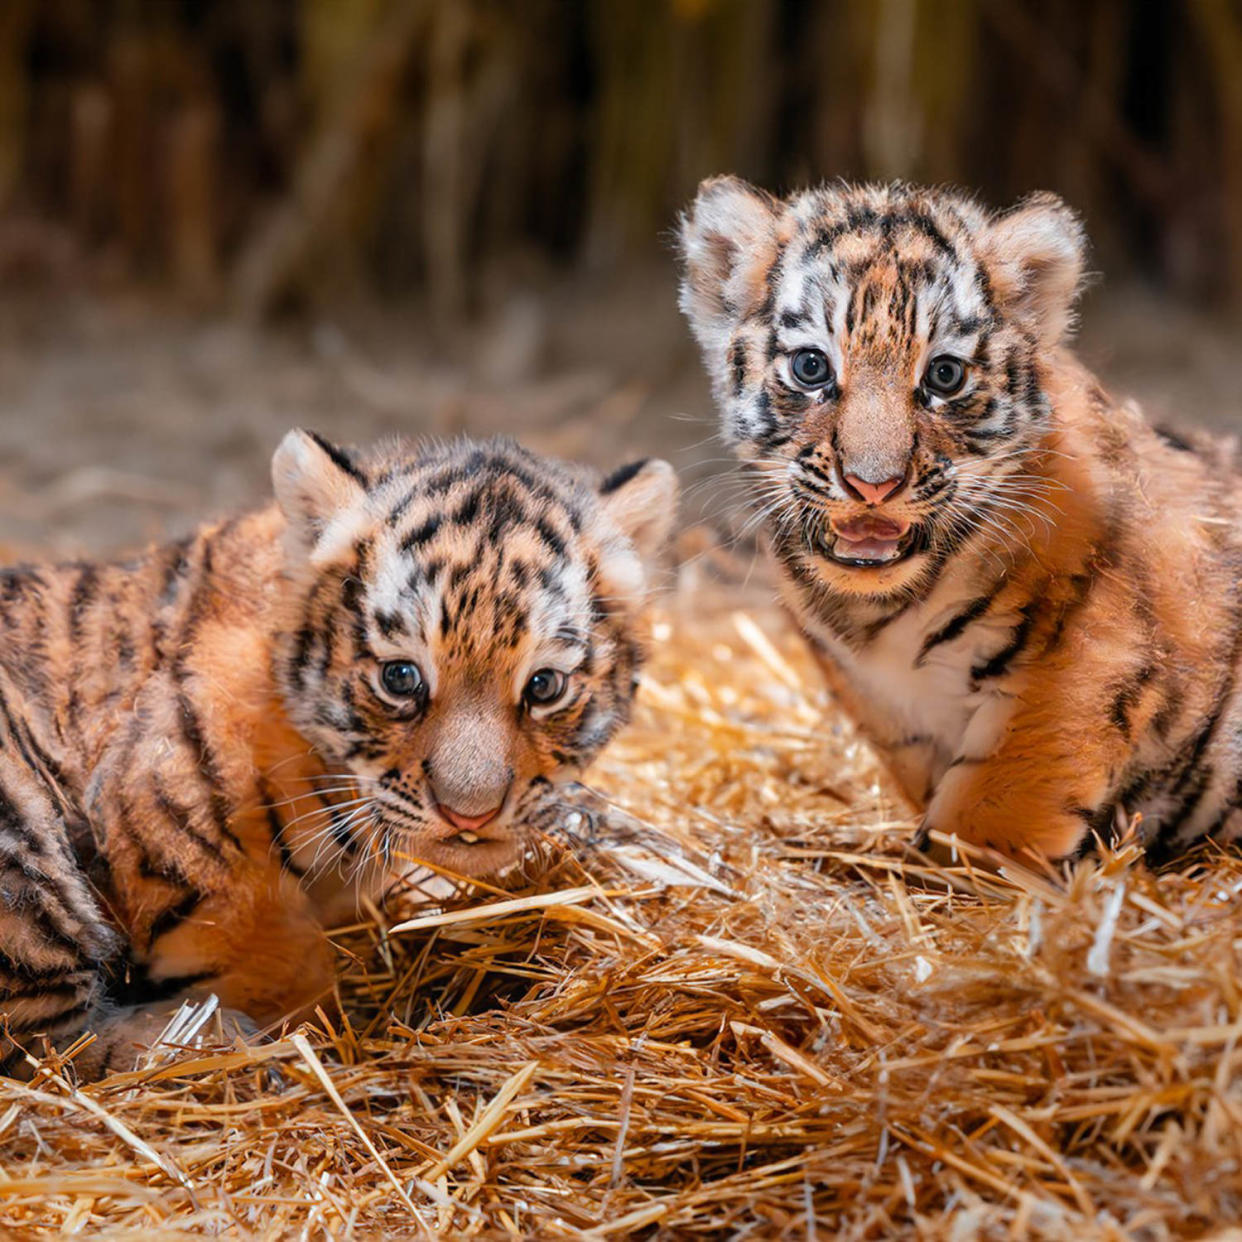 Toledo Zoo Tigers (Corey Wyckoff / The Toledo Zoo)